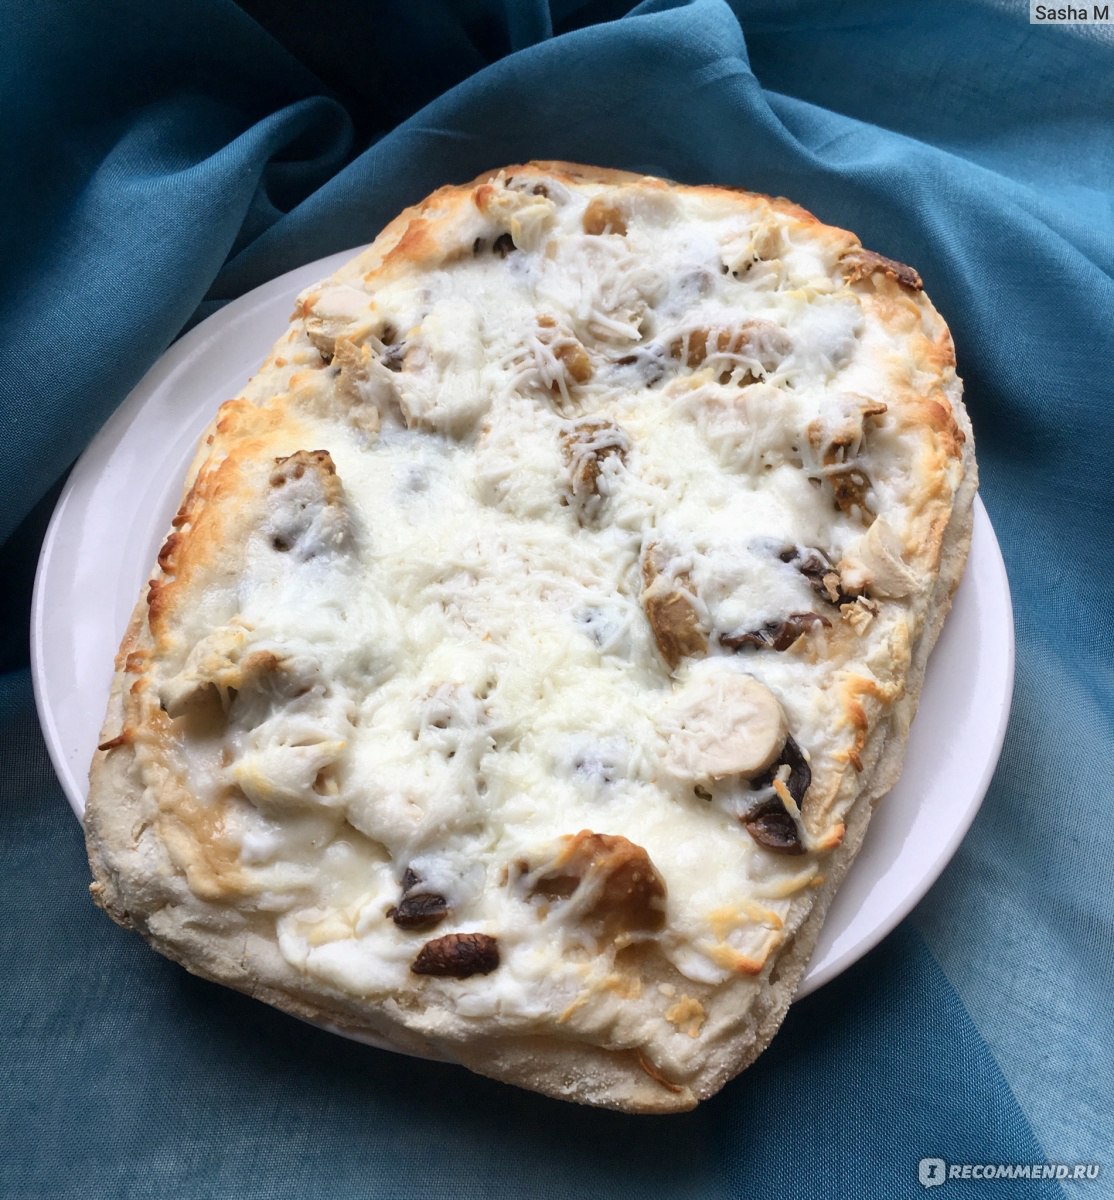 Пицца римская с курицей и белыми грибами, зам. Айс от ВкусВилл Отзывы